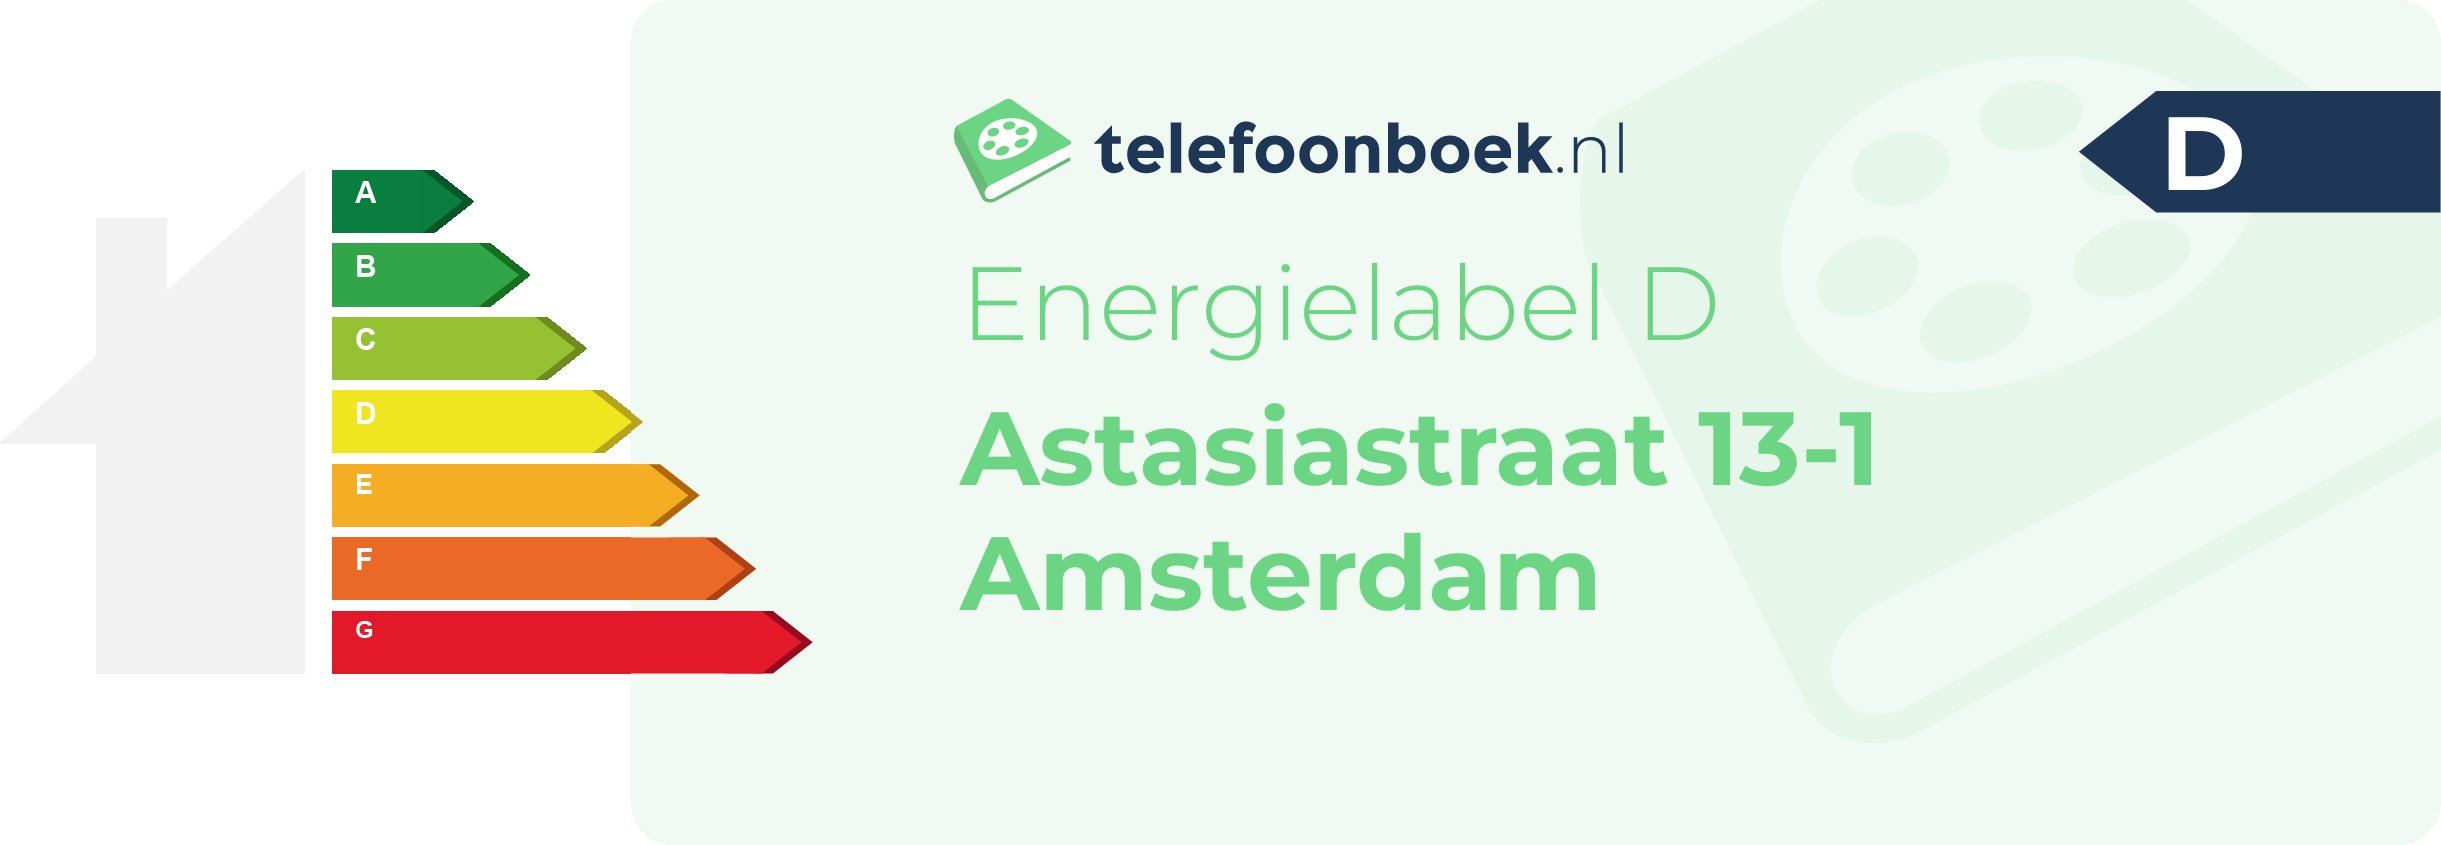 Energielabel Astasiastraat 13-1 Amsterdam